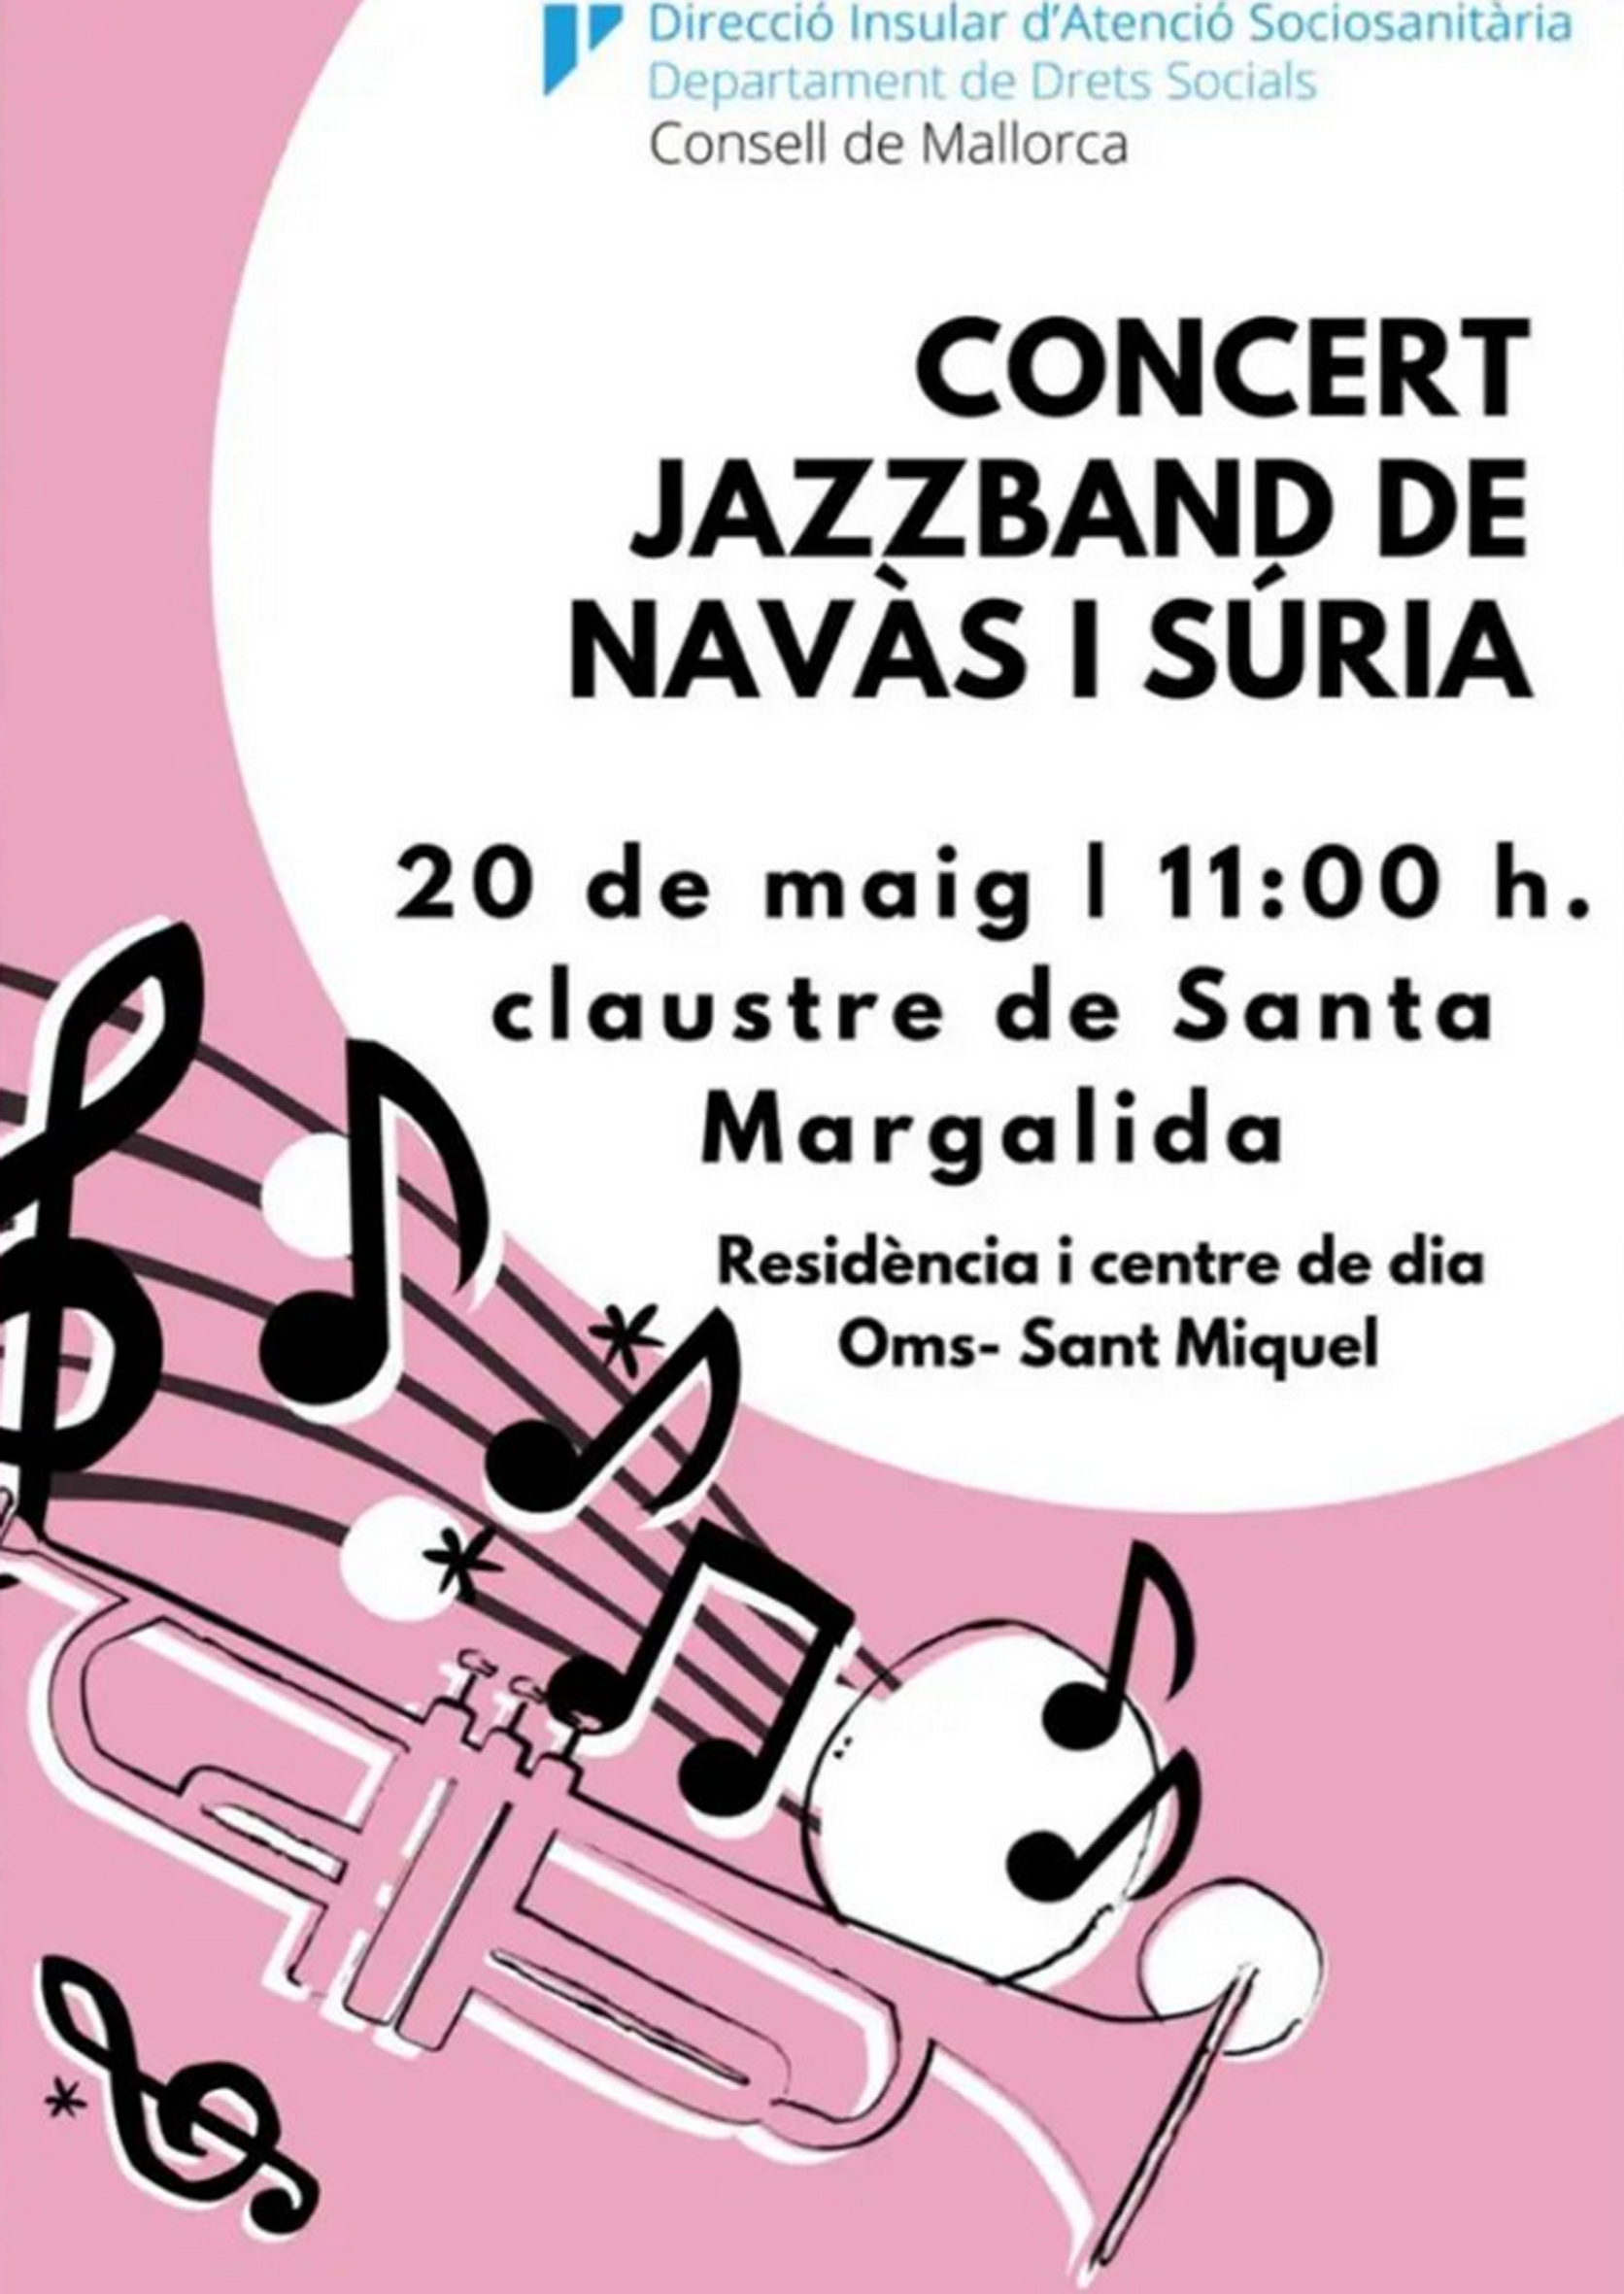 Cartell del concert de la JazzBand Navàs-Súria a Palma de Mallorca - Dissabte 20 de maig.